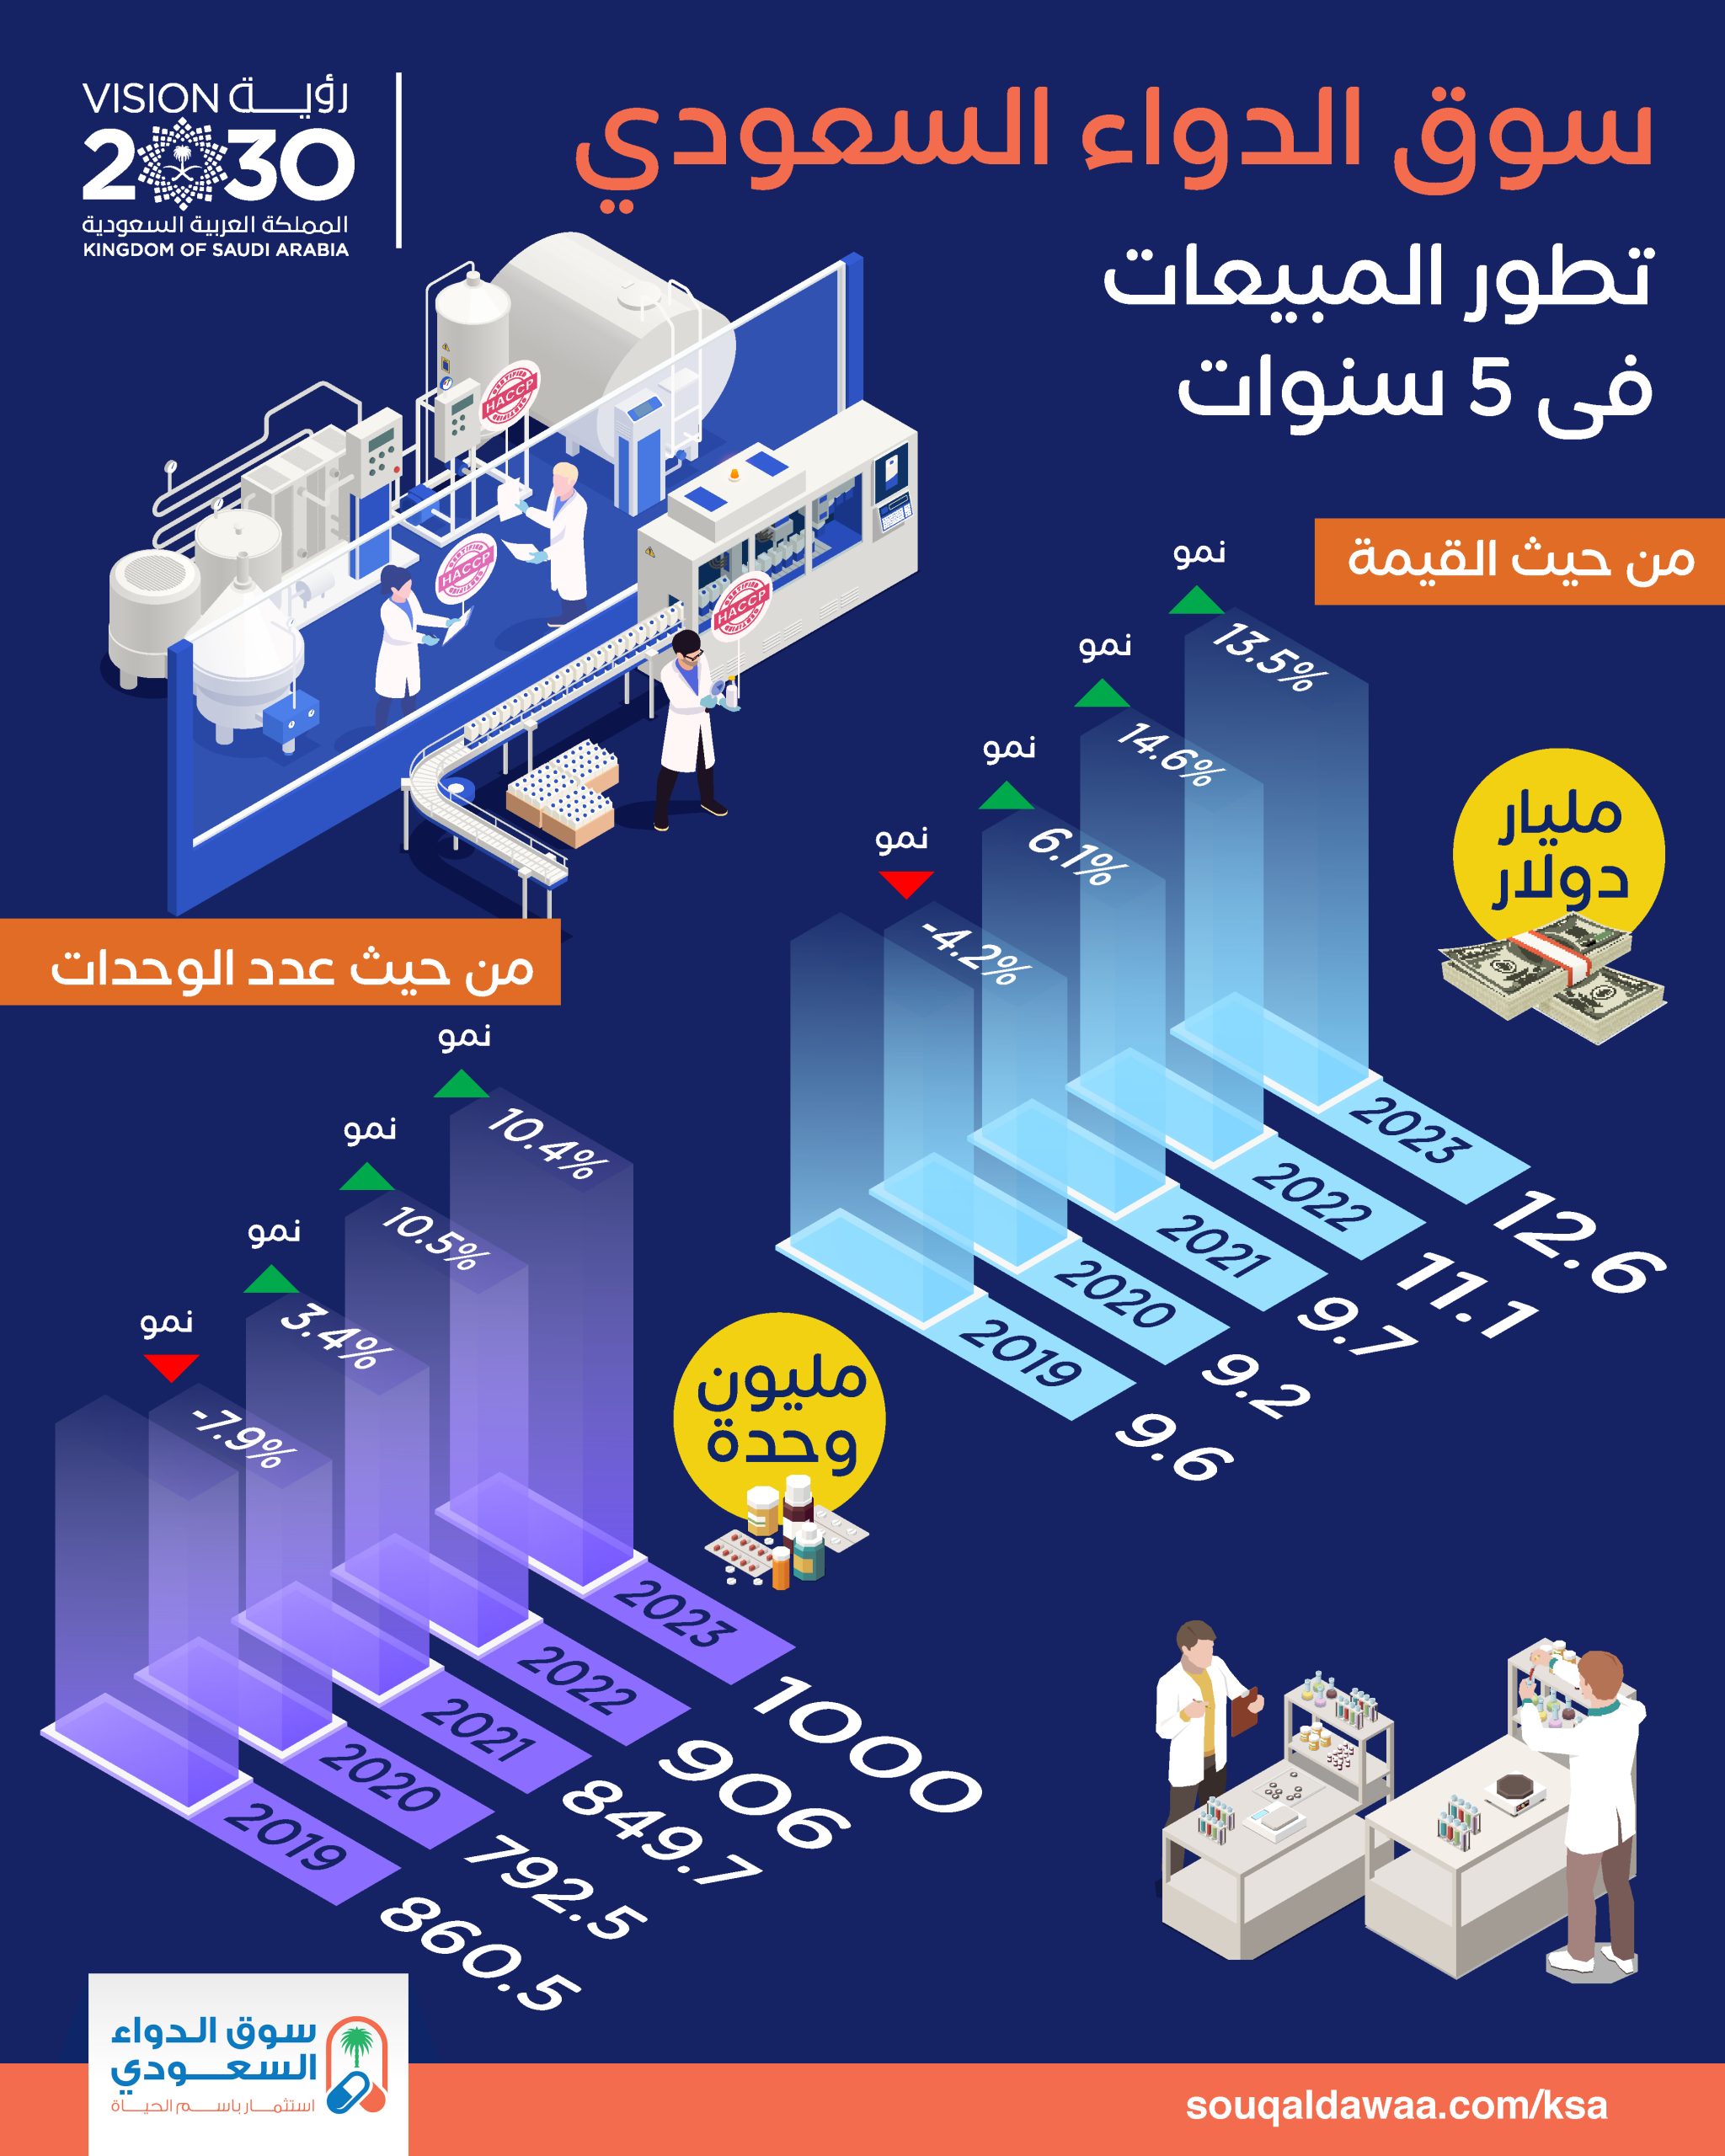 تطور مبيعات سوق الدواء السعودي من حيث القيمة وعدد الوحدات في 5 سنوات 